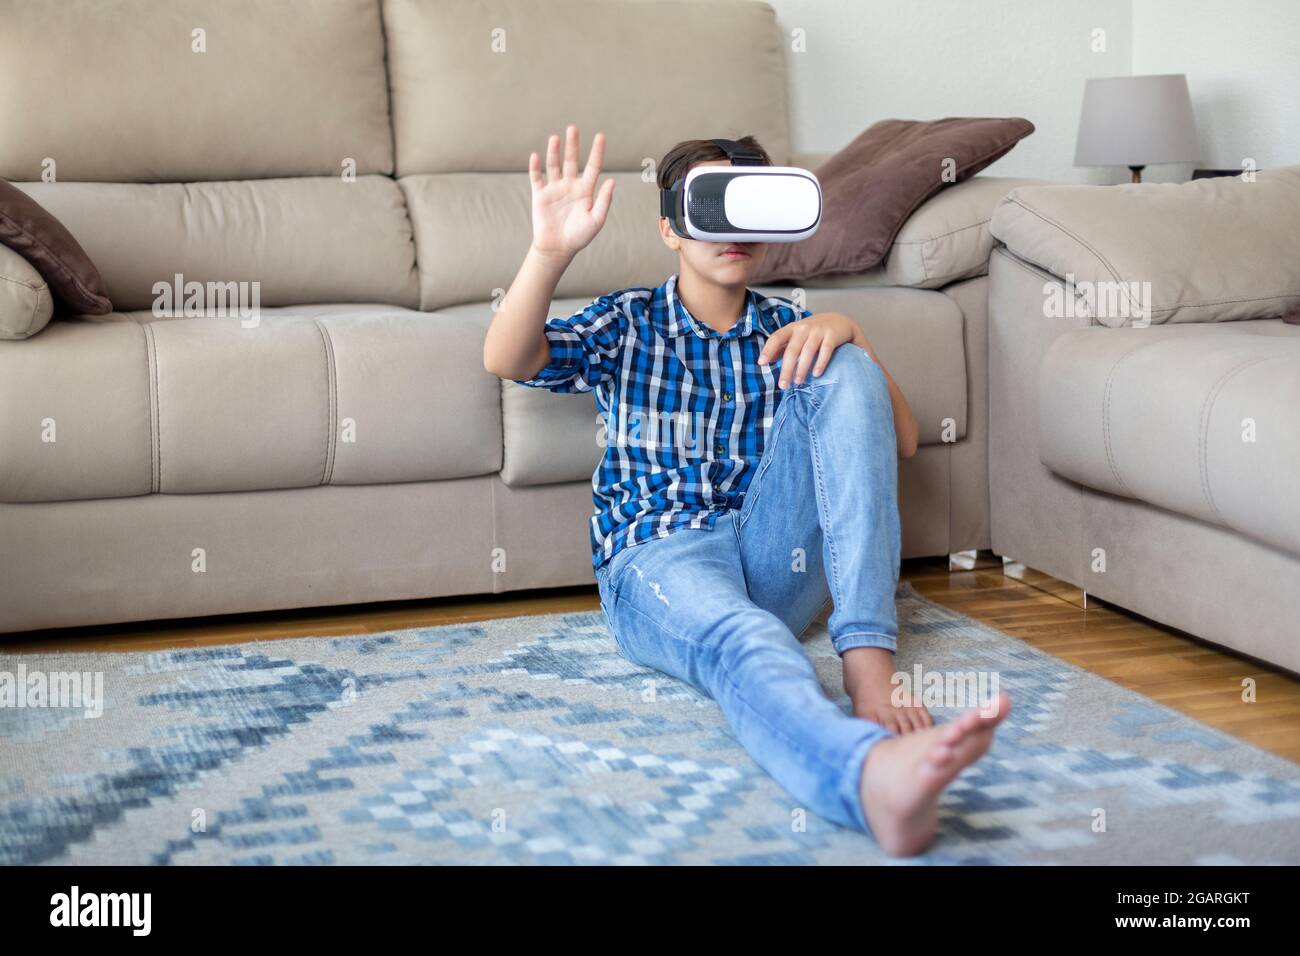 Adolescent de race blanche portant des lunettes de réalité virtuelle, jouant et essayant de toucher quelque chose avec sa main. Banque D'Images